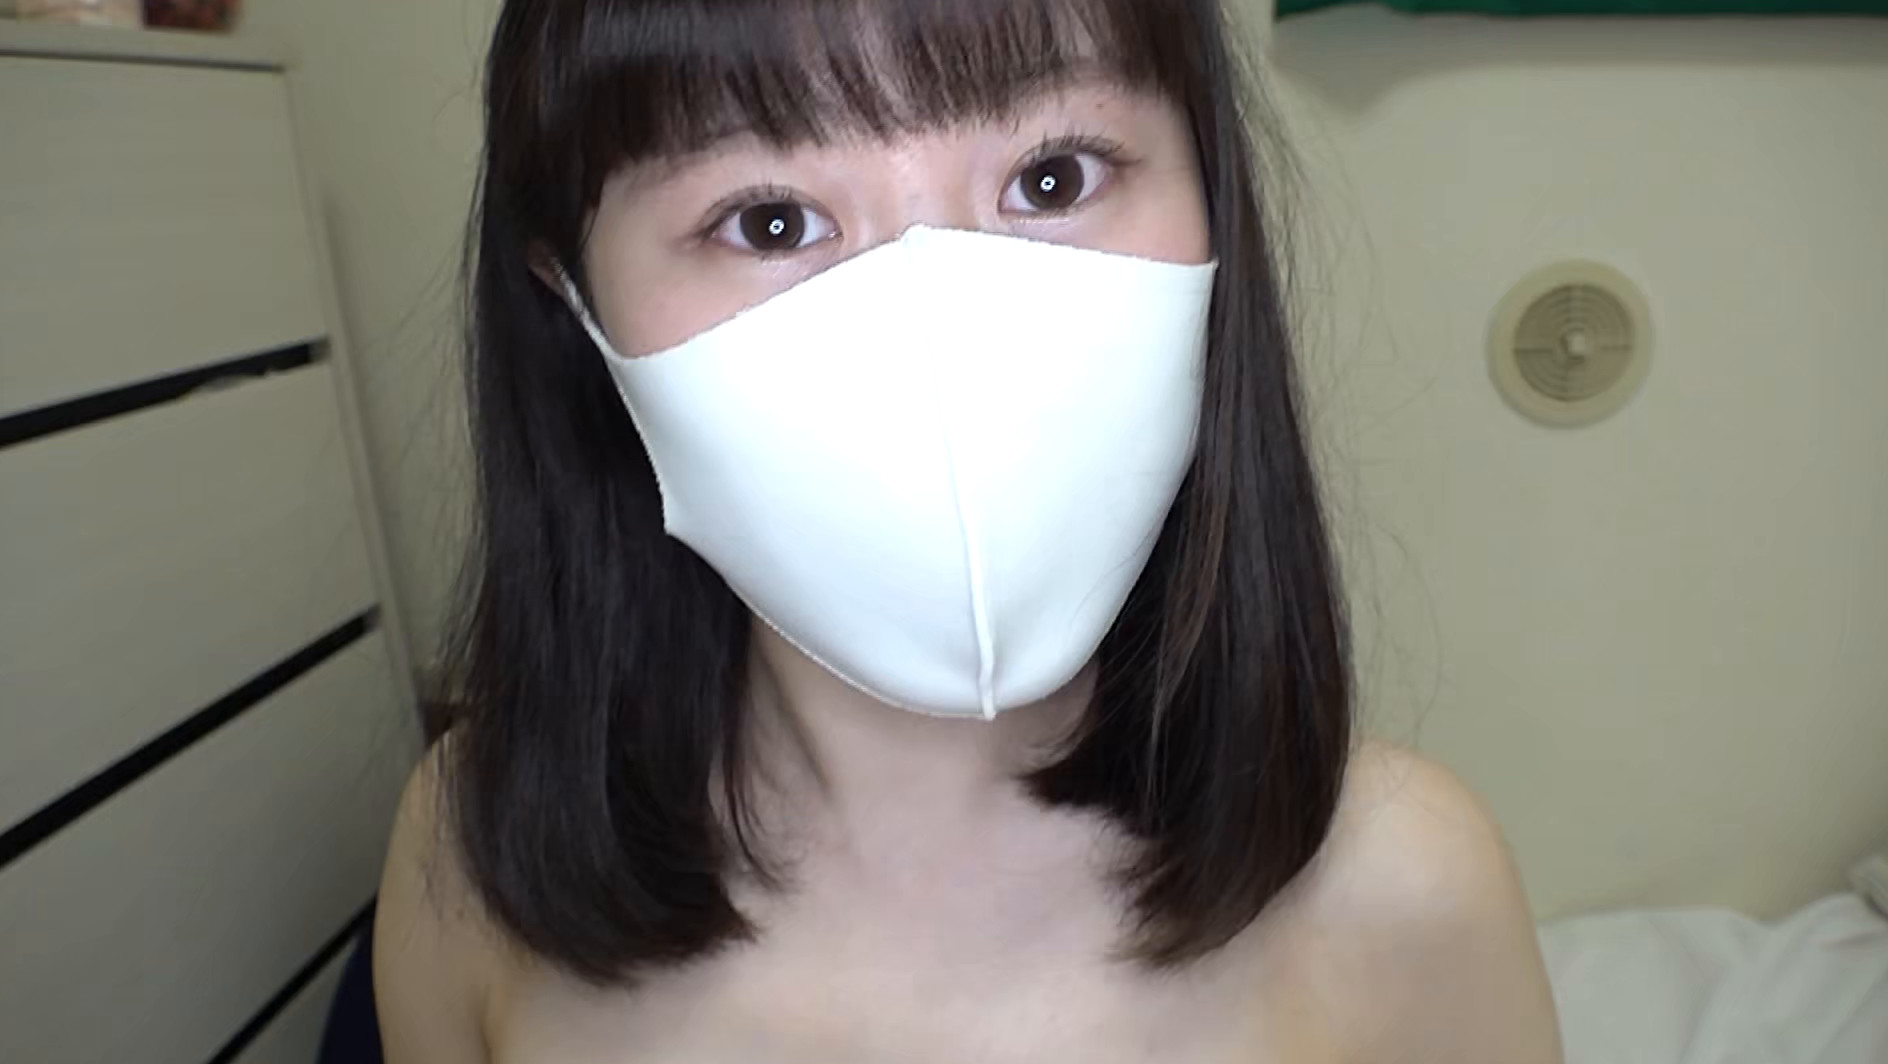 ★【ハメ撮り】マスク着用を条件に撮影を了承してくれた普通の女子大生 みどりちゃん 21歳